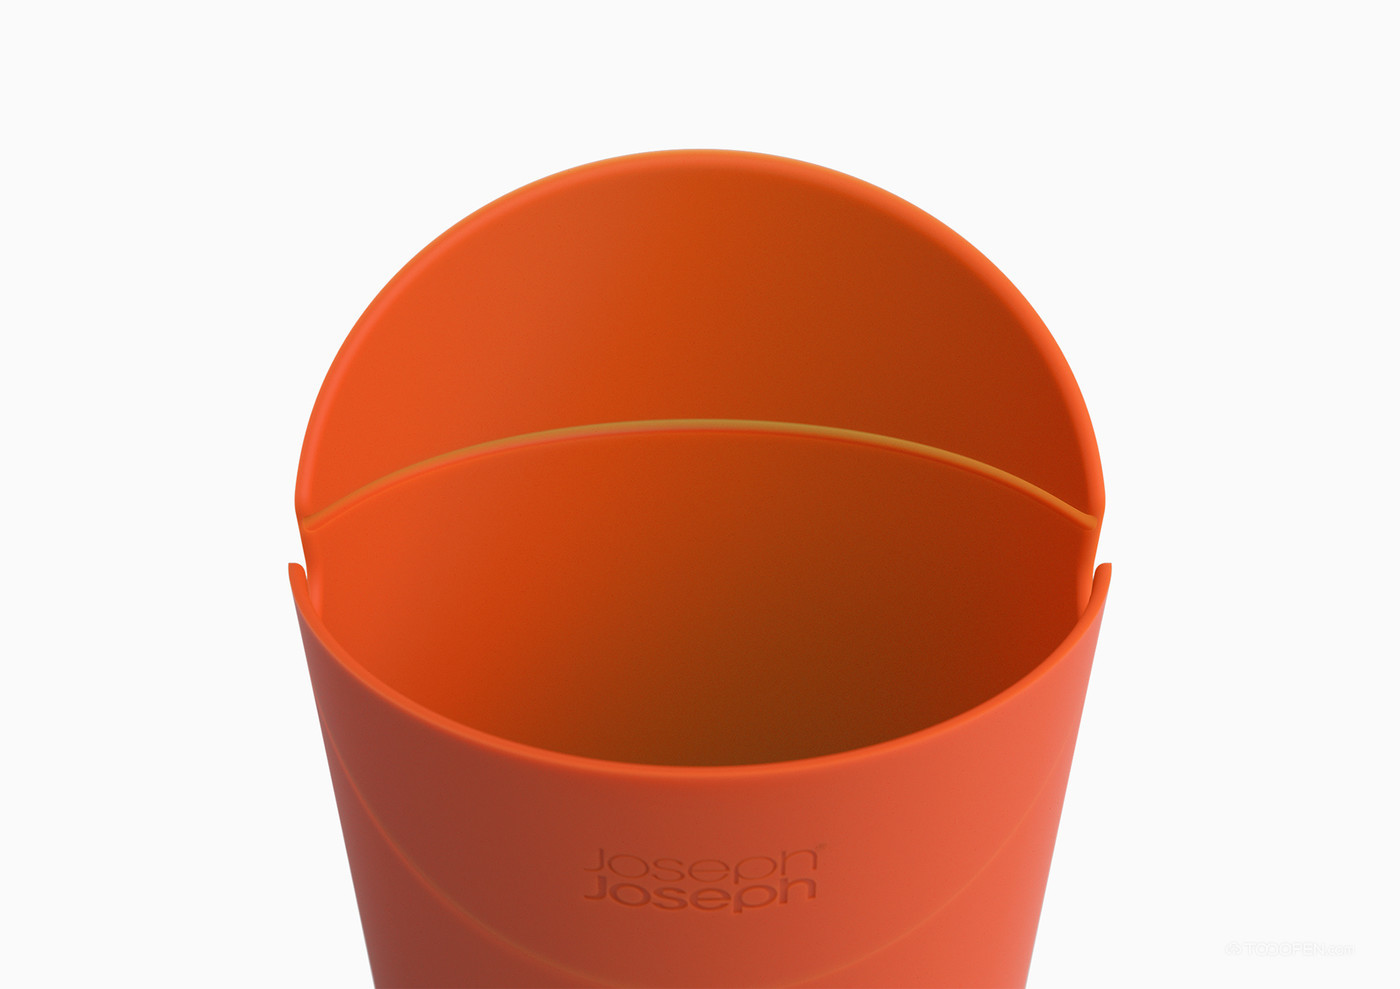 英国Joseph Joseph硅胶爆米花杯产品设计欣赏-01